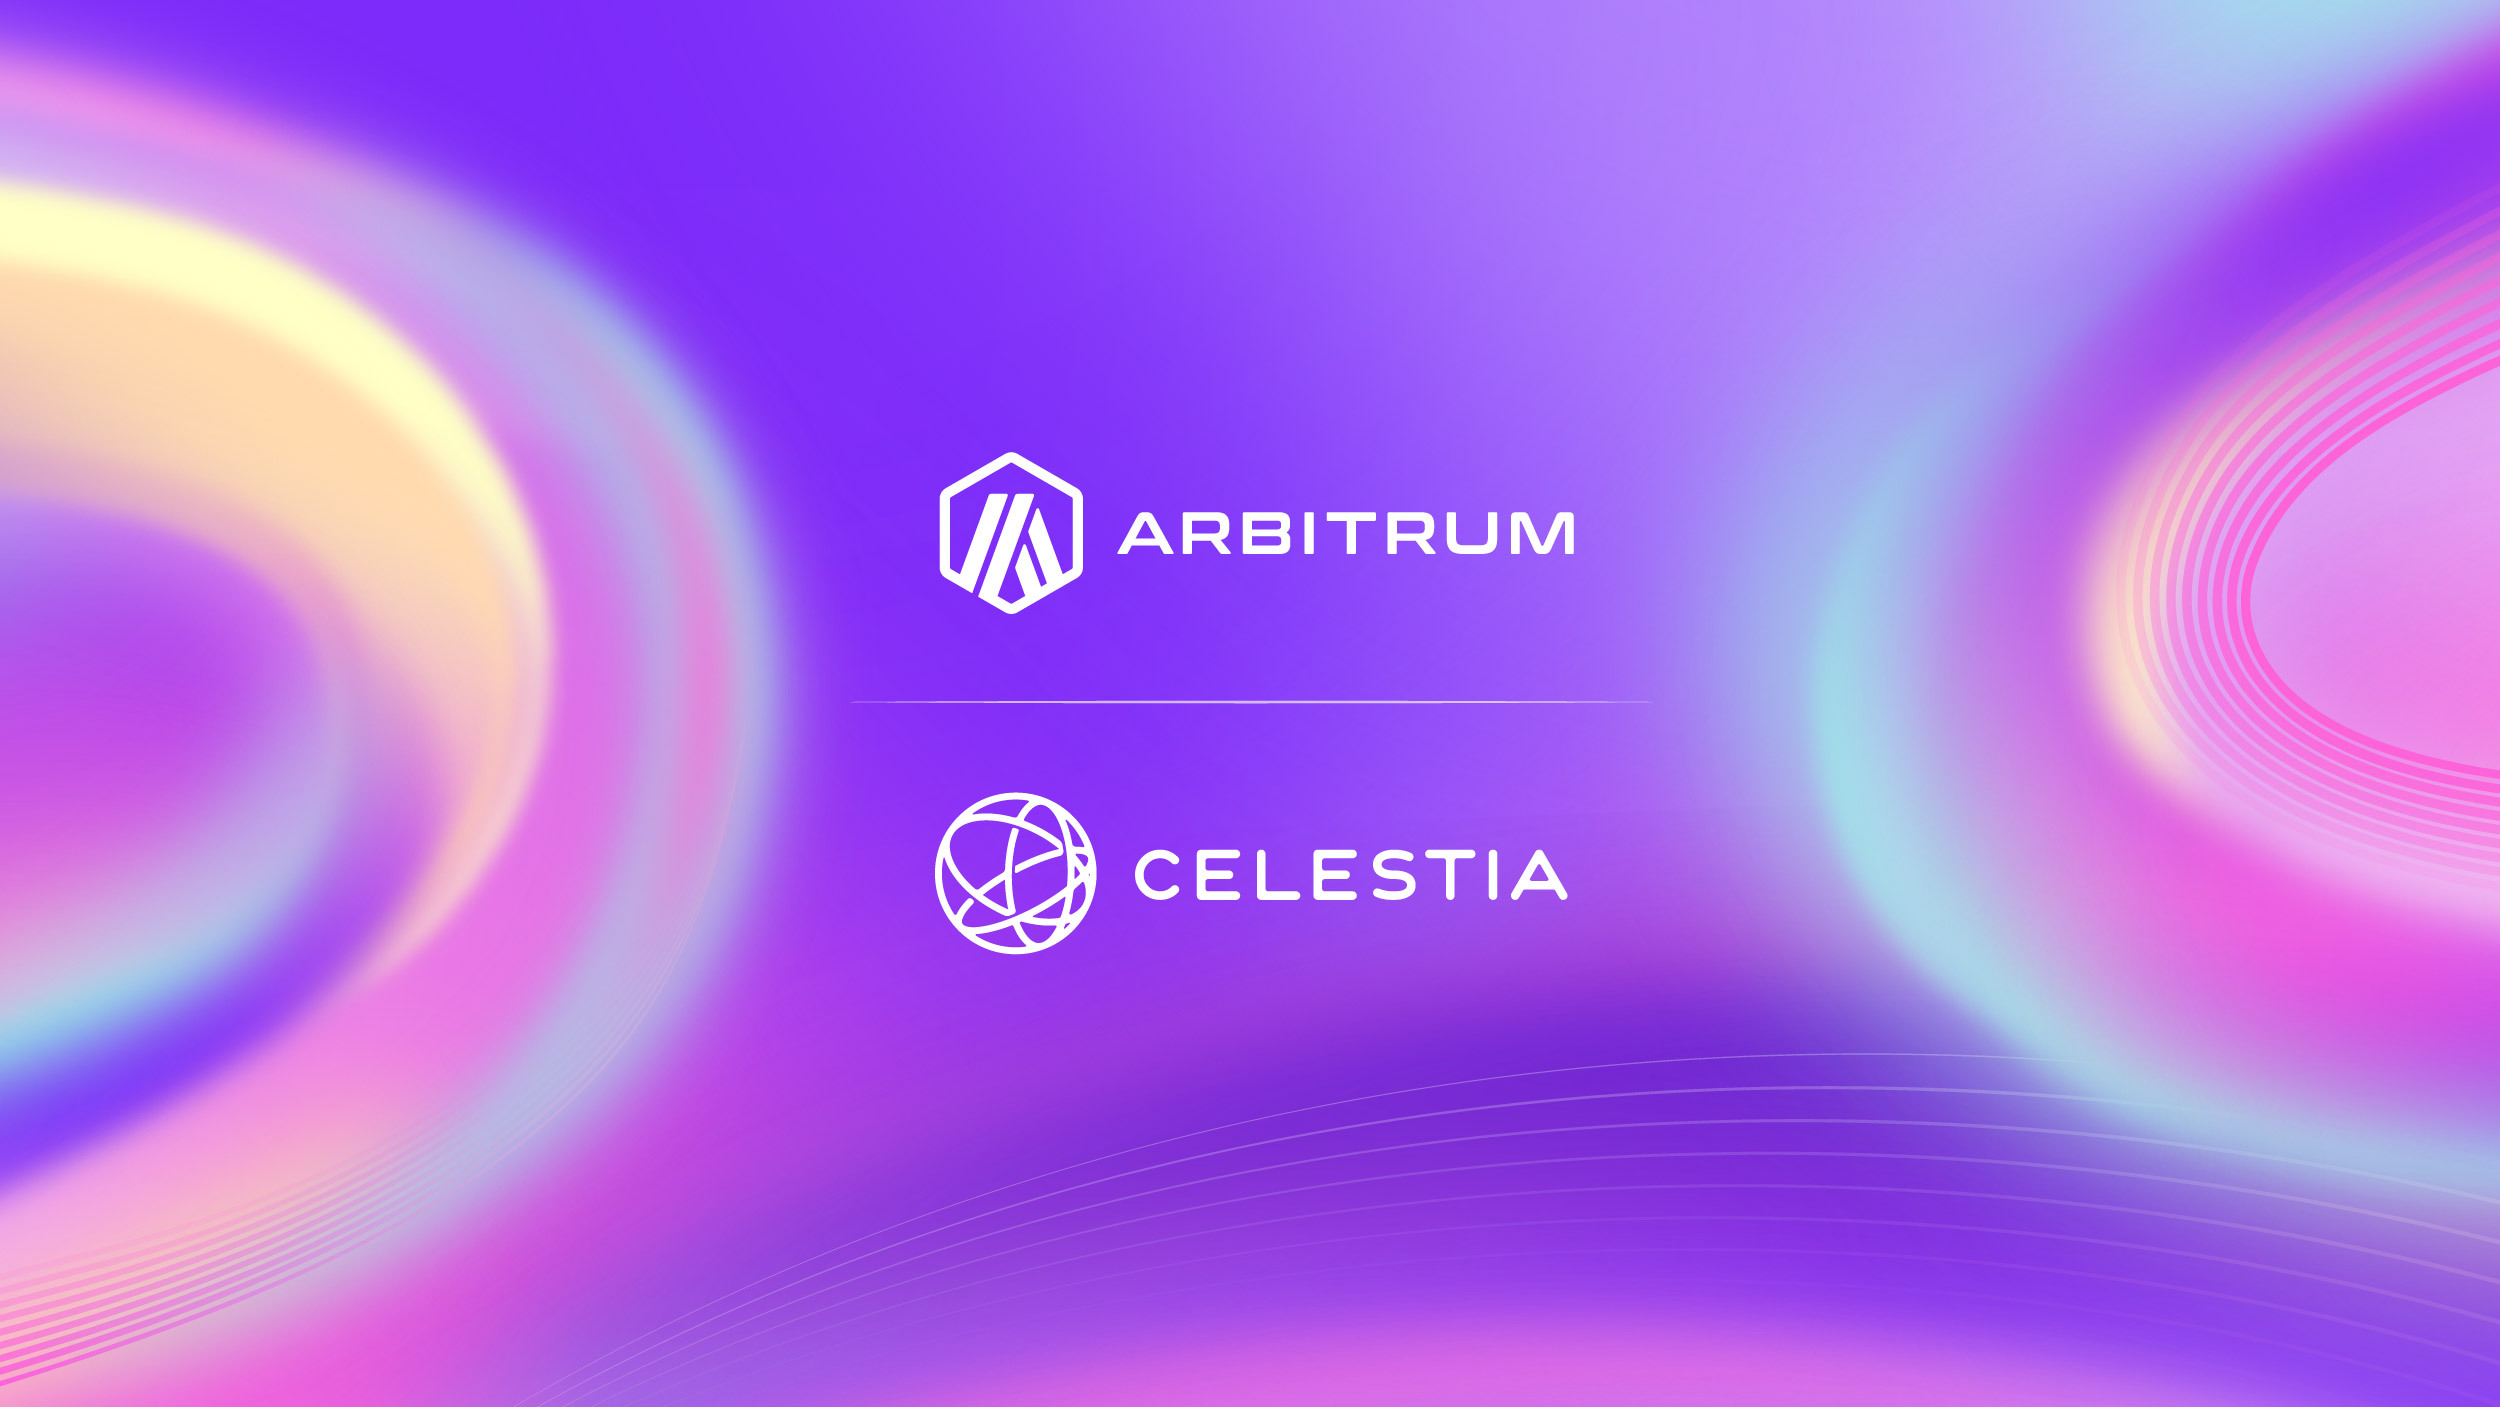 Celestia_Arbitrum